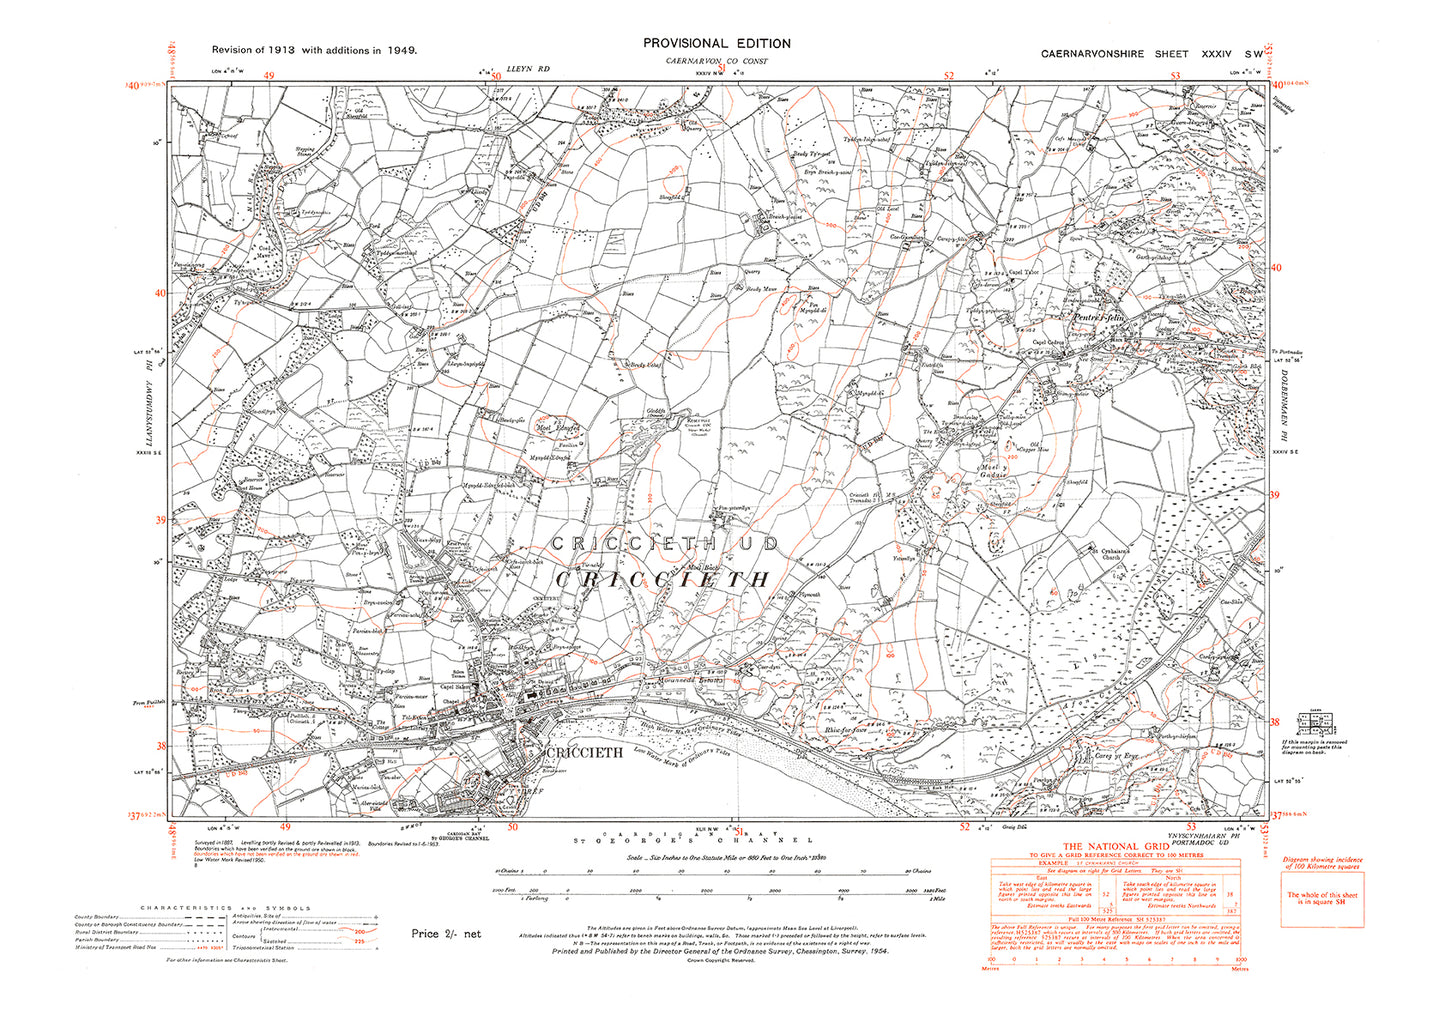 Criccieth, Pentr'r-felin, old map Caernarvon 1949: 34SW